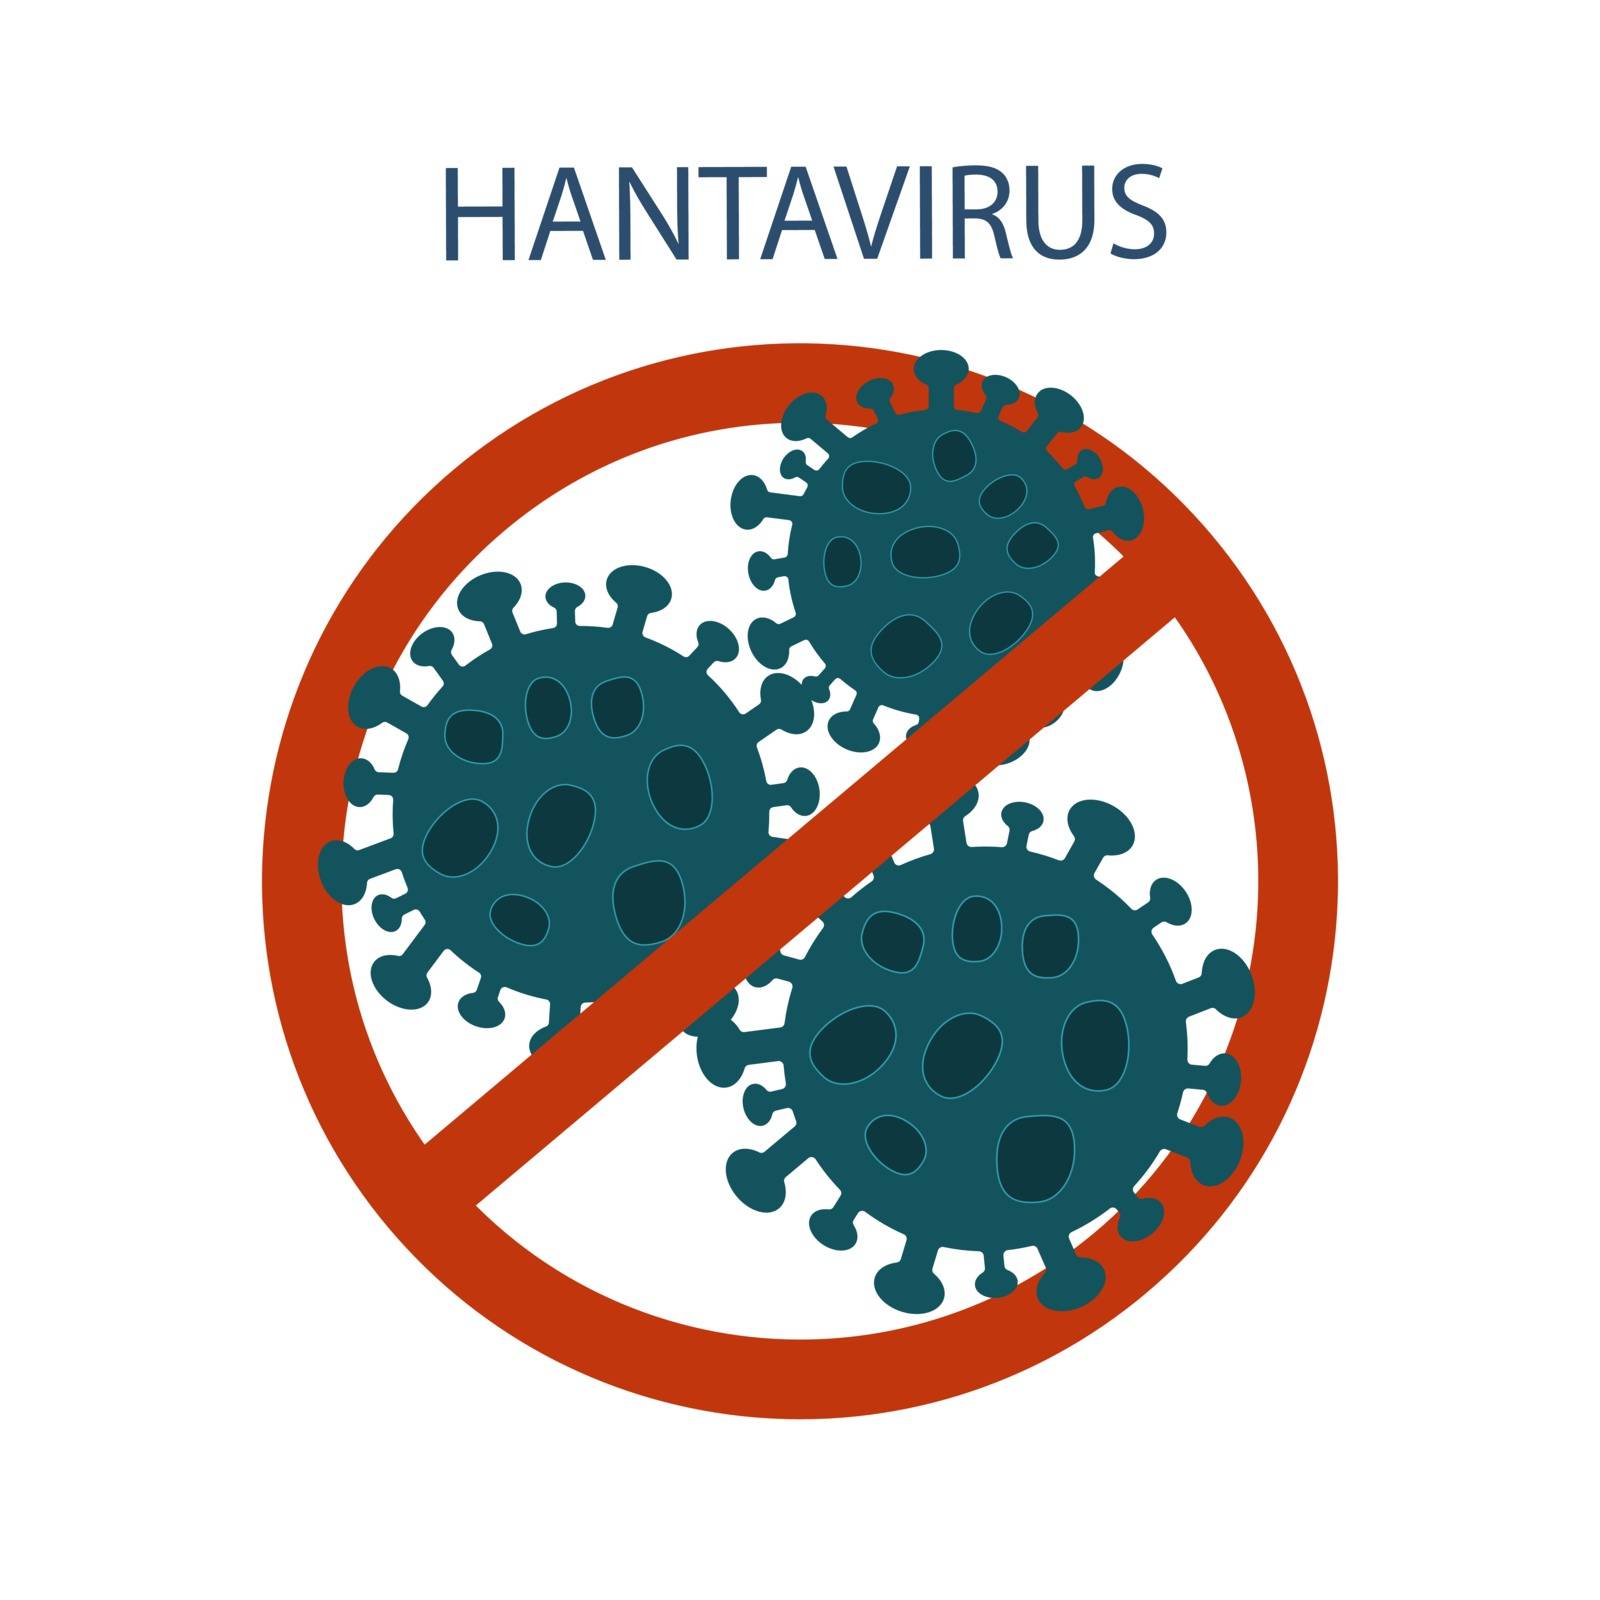 Stop hantavirus. Warning sign vector illustration EPS 10